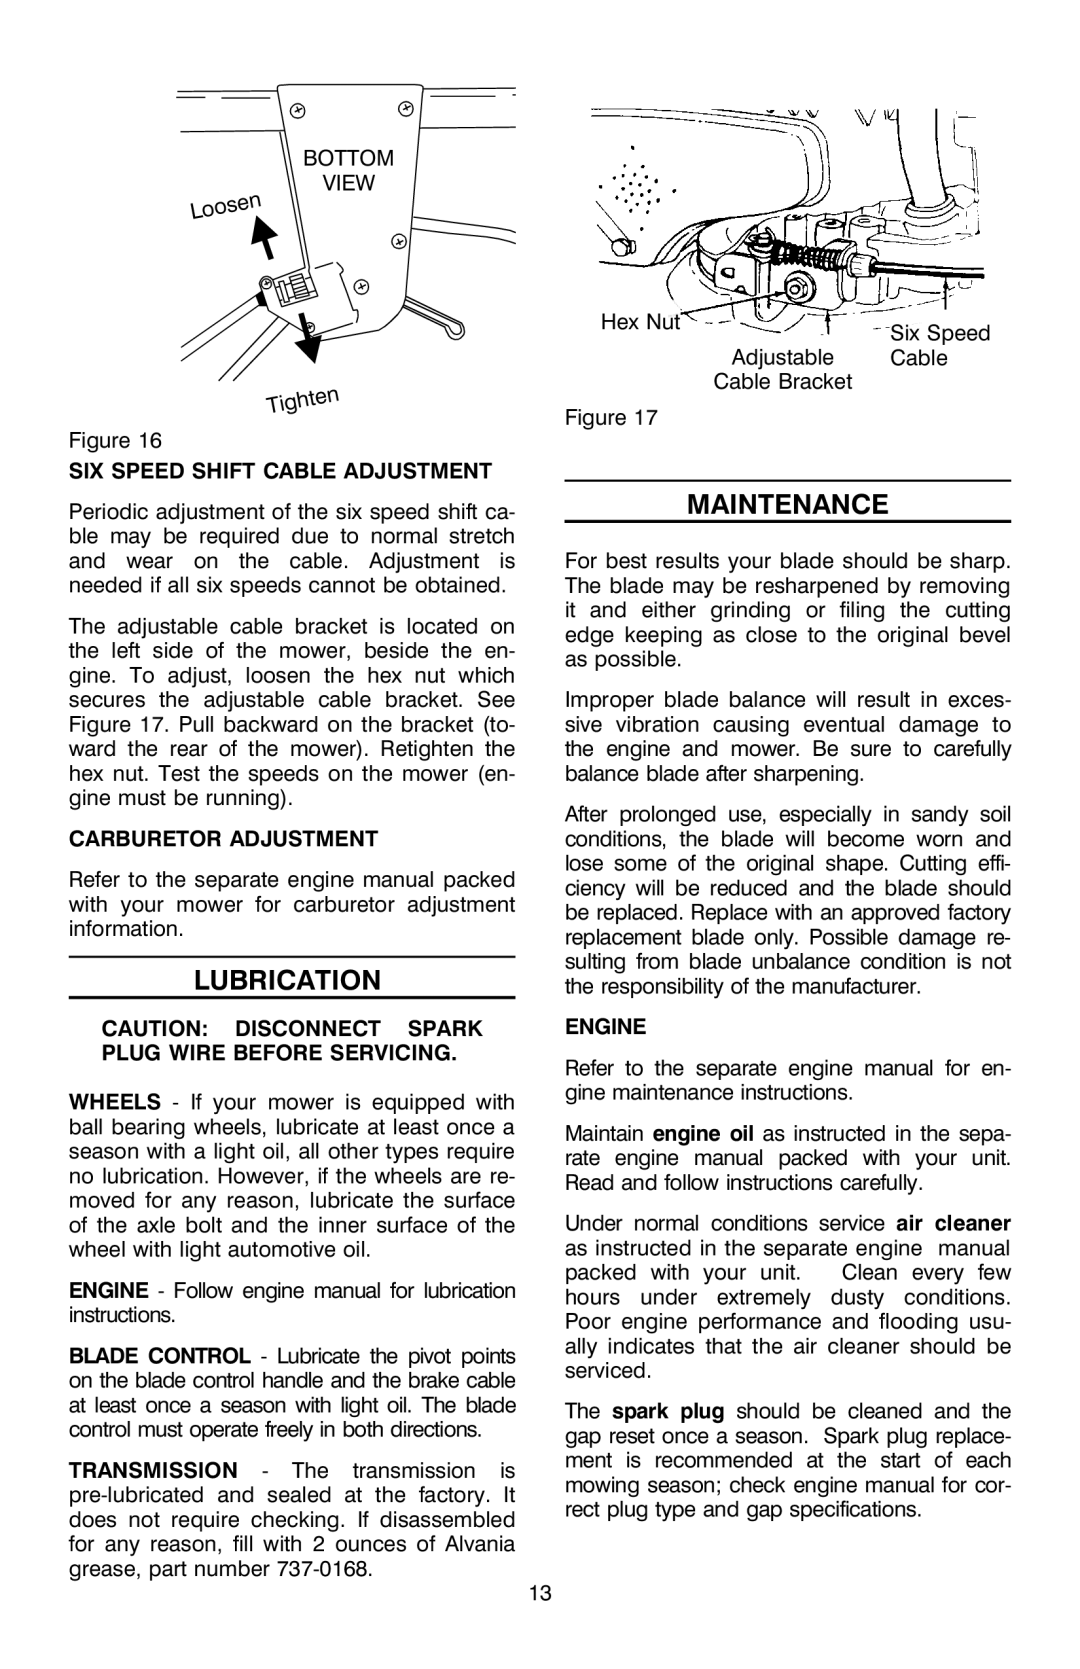 Troy-Bilt OG-4904 manual Lubrication, Maintenance, Six Speed Shift Cable Adjustment, Carburetor Adjustment, Engine 